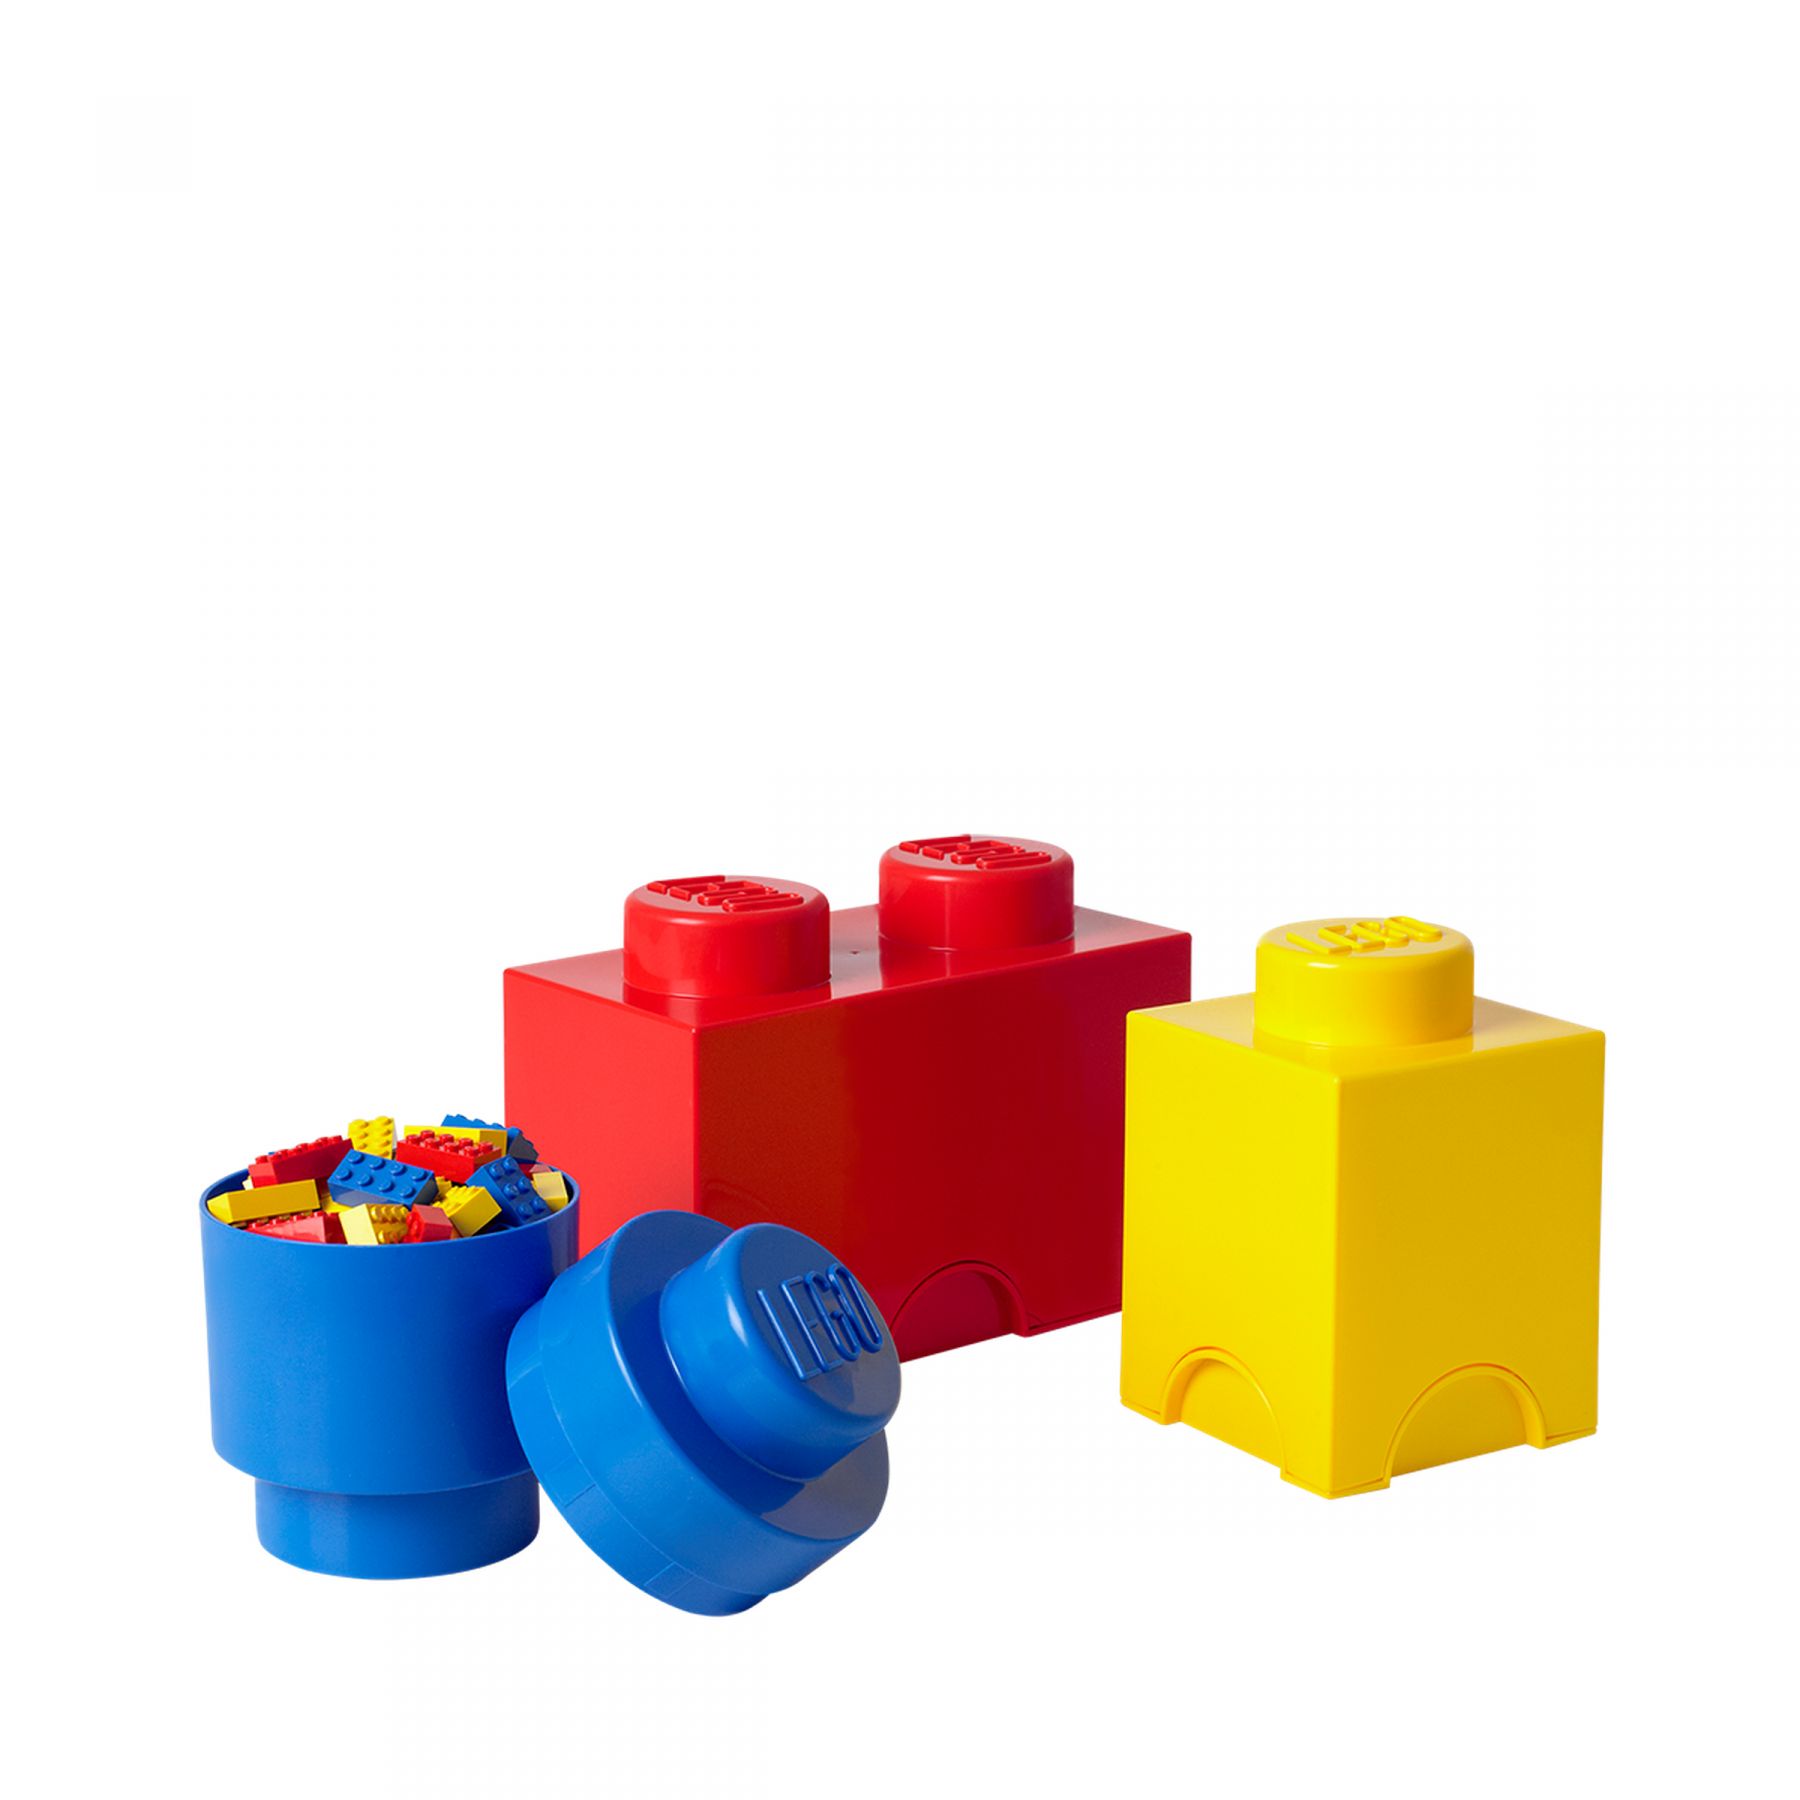 LEGO Gear 5004894 LEGO® DREIERPACKUNG LEGO_5004894.jpg